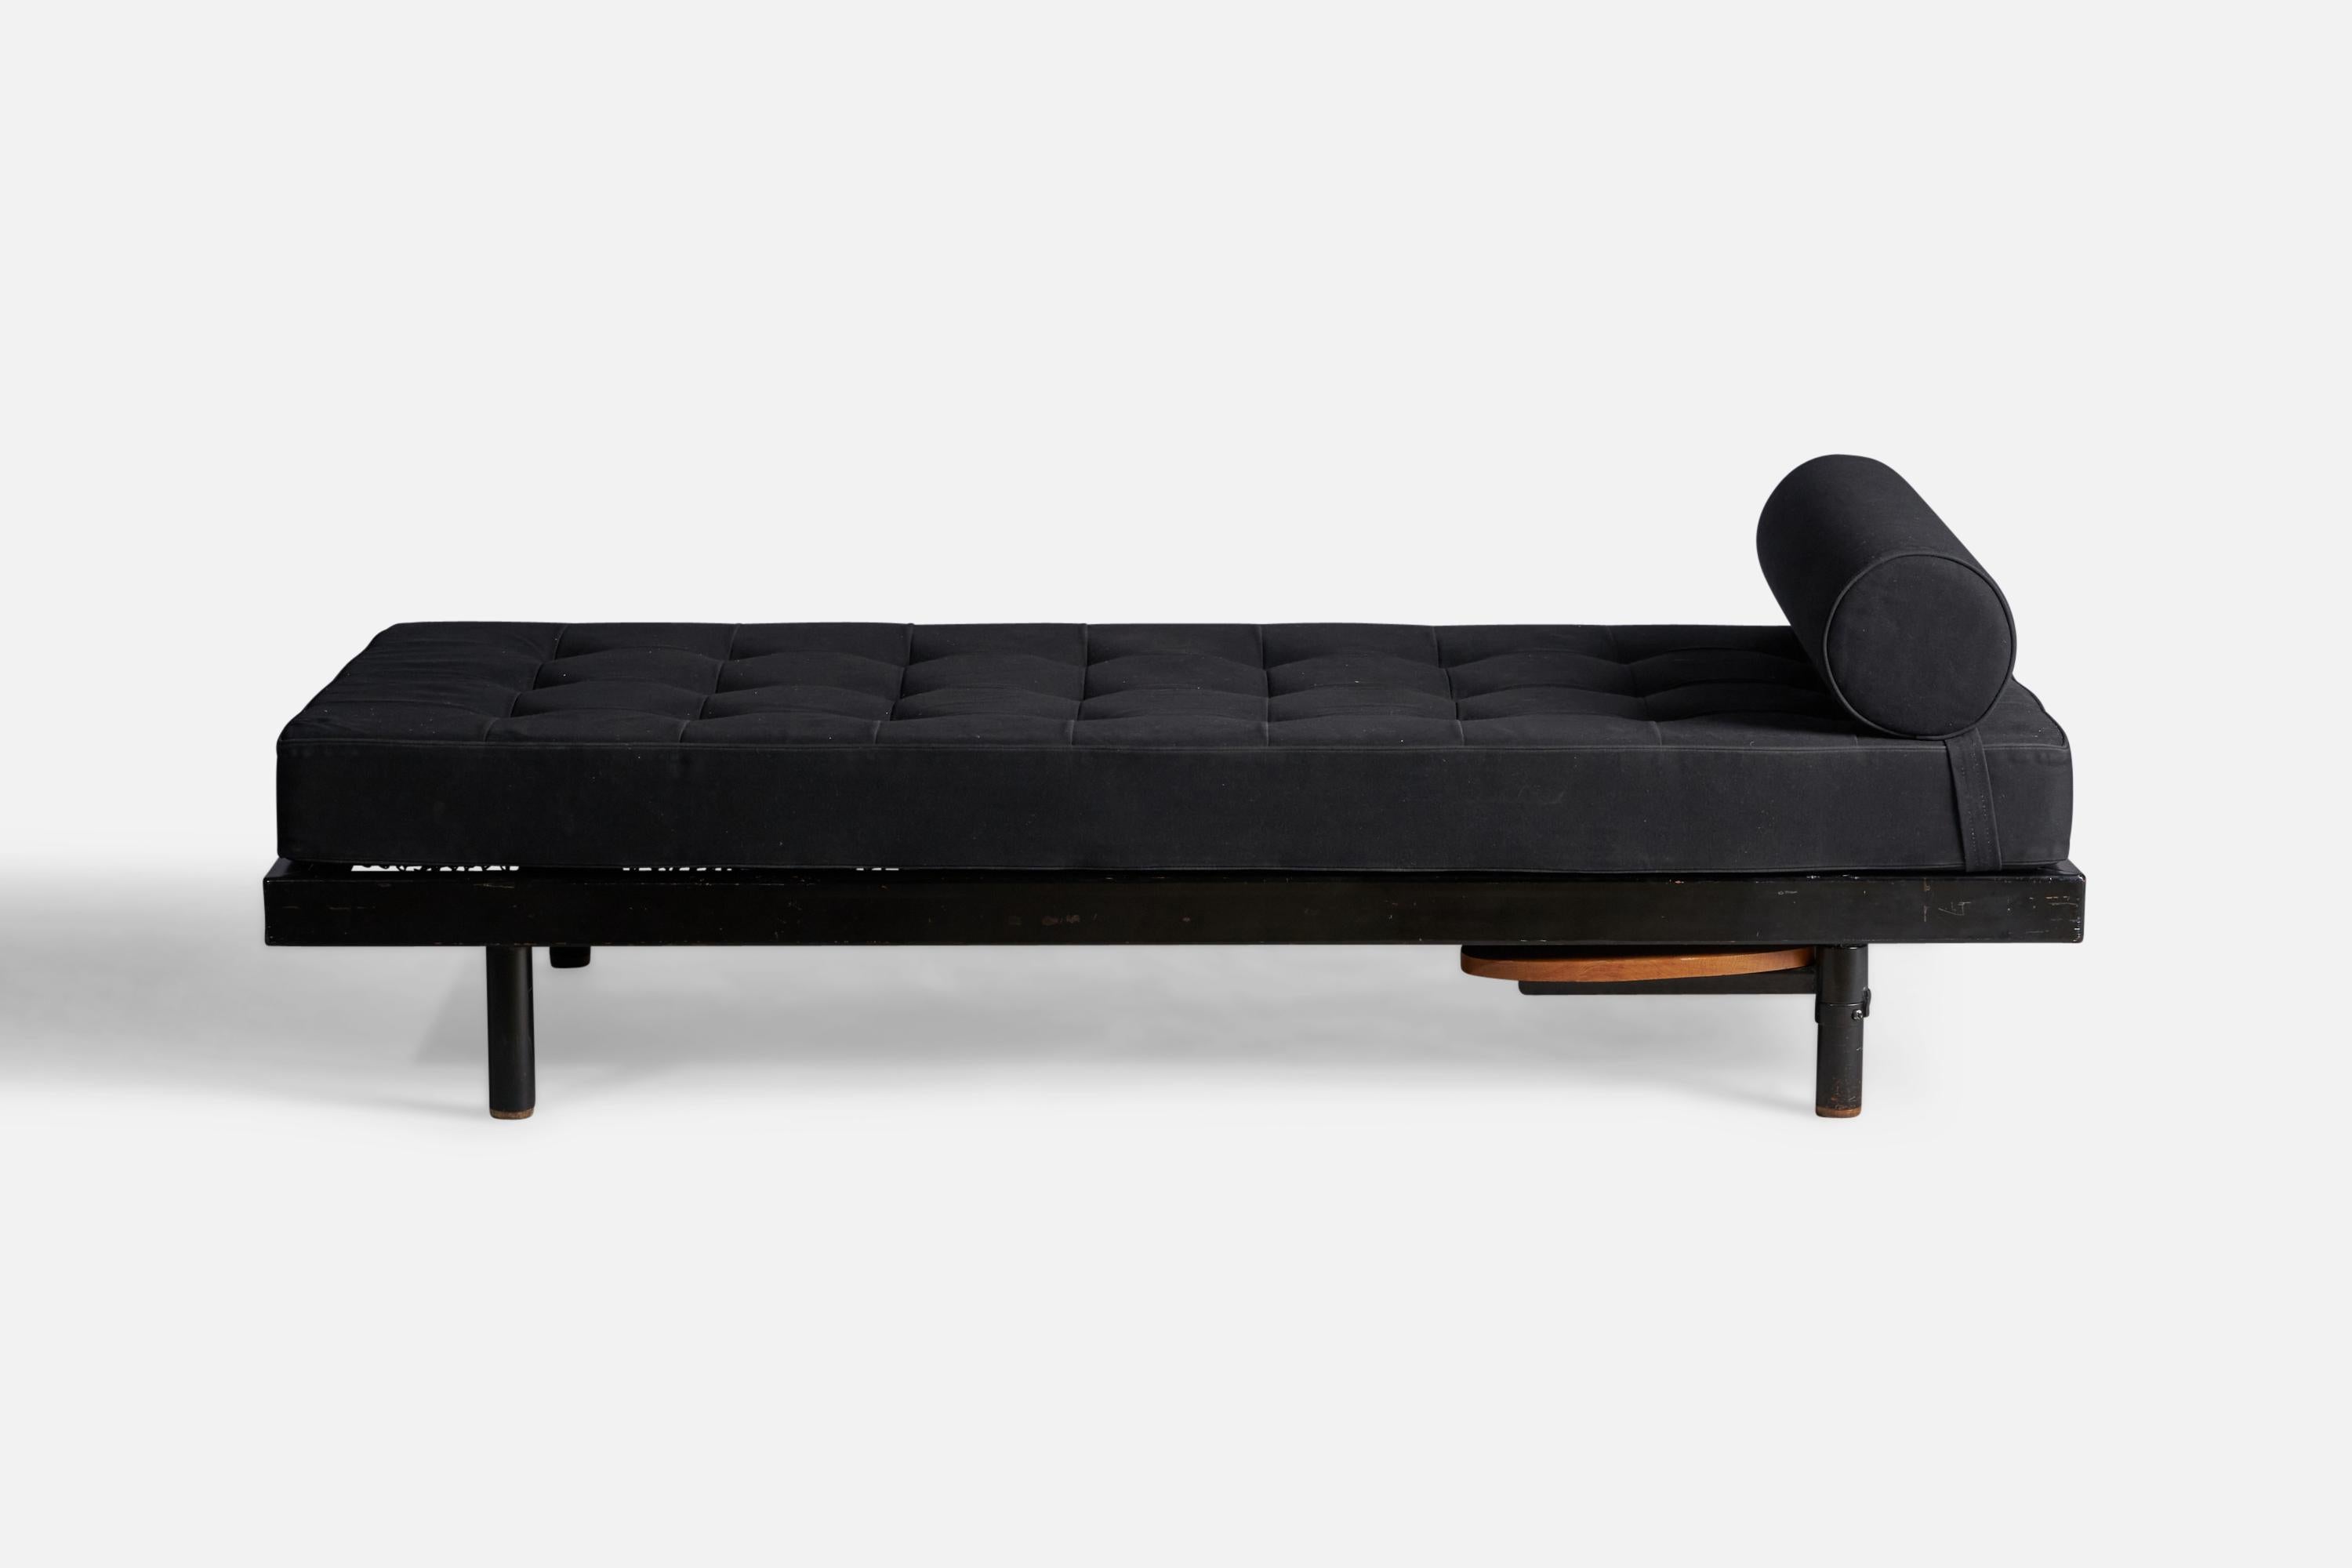 Ein Tagesbett aus schwarz lackiertem Metall, schwarzem Stoff und Eiche, entworfen von Jean Prouvé und hergestellt von Ateliers Prouve, Frankreich, 1950er Jahre.

Beistelltisch erhöht die Breite um 14,25